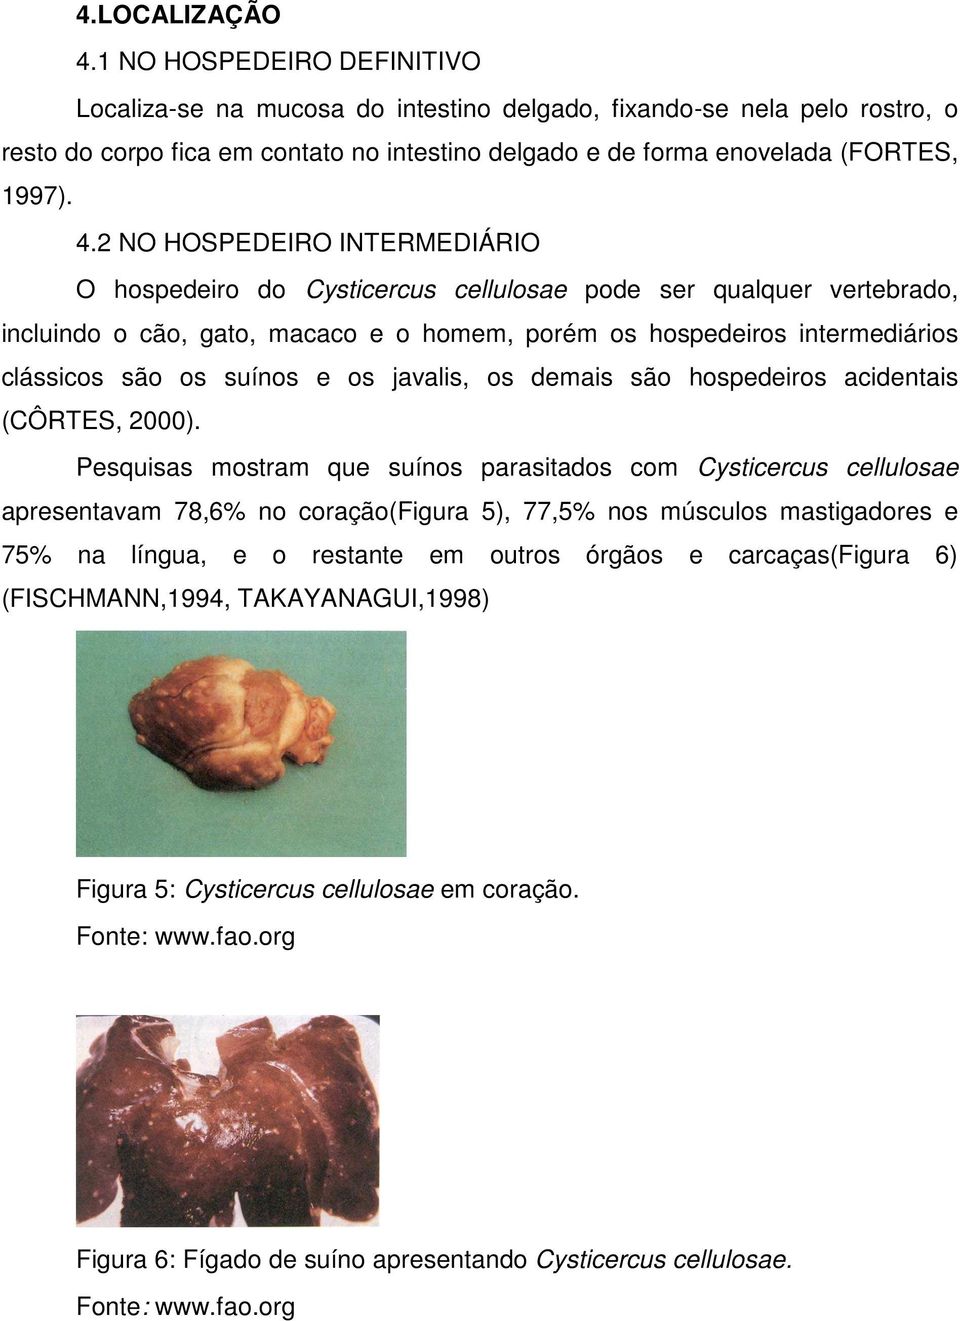 2 NO HOSPEDEIRO INTERMEDIÁRIO O hospedeiro do Cysticercus cellulosae pode ser qualquer vertebrado, incluindo o cão, gato, macaco e o homem, porém os hospedeiros intermediários clássicos são os suínos